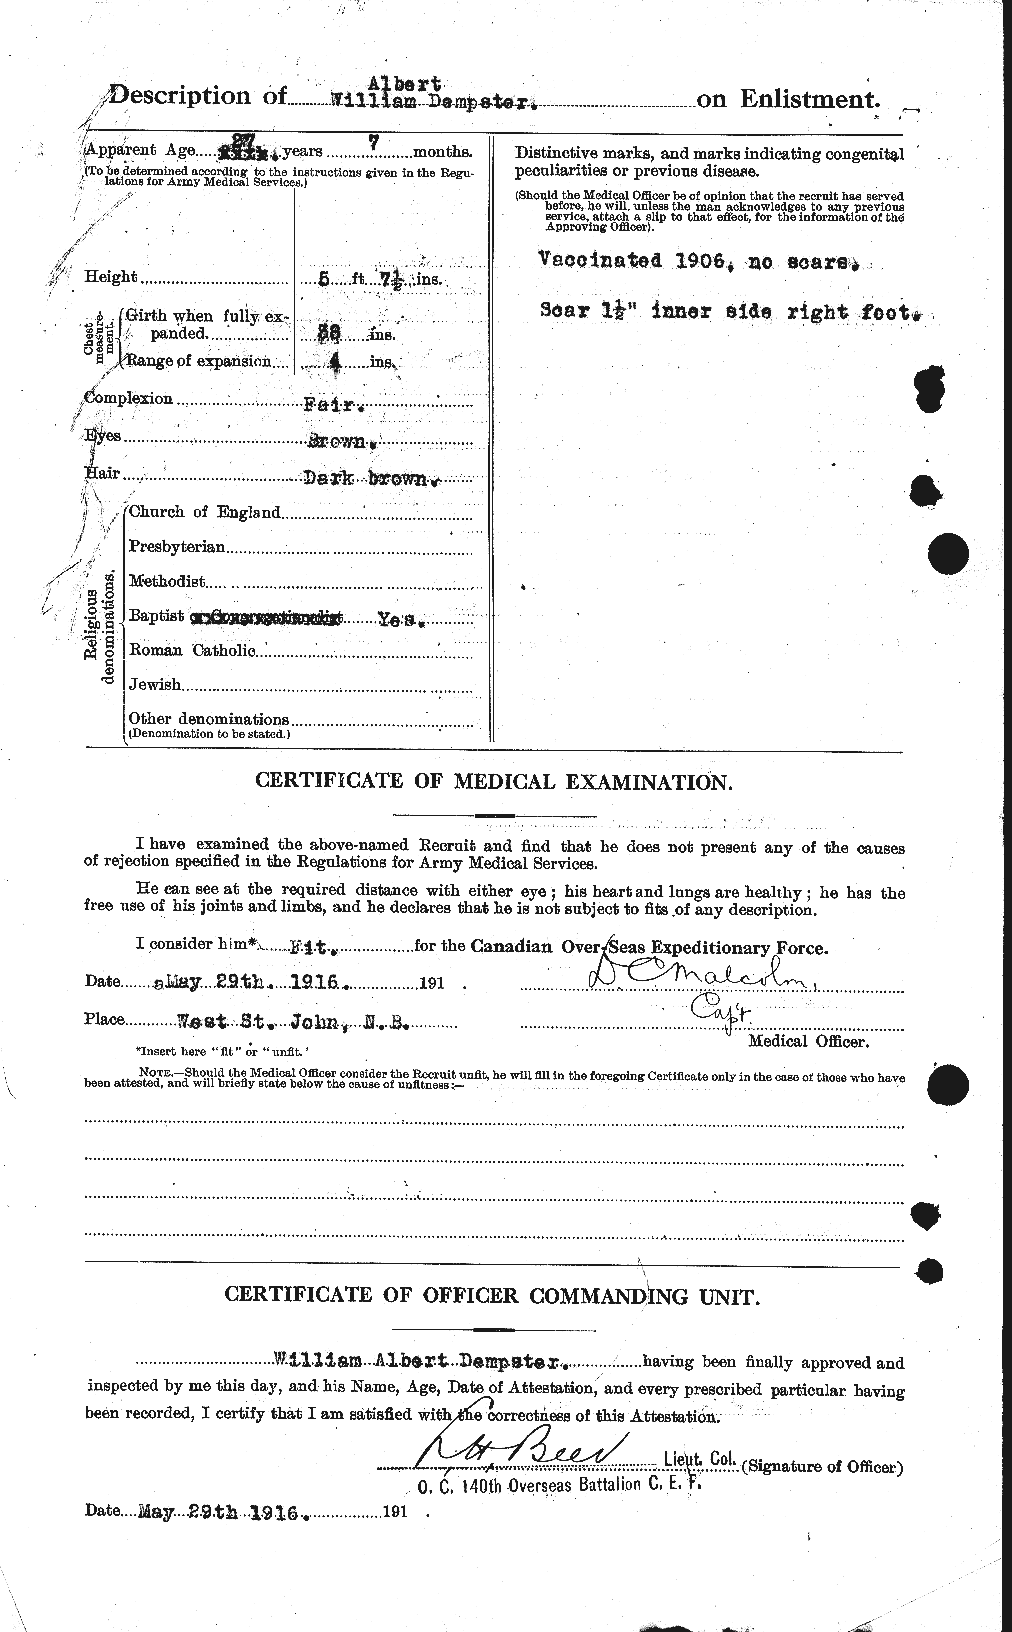 Dossiers du Personnel de la Première Guerre mondiale - CEC 286981b